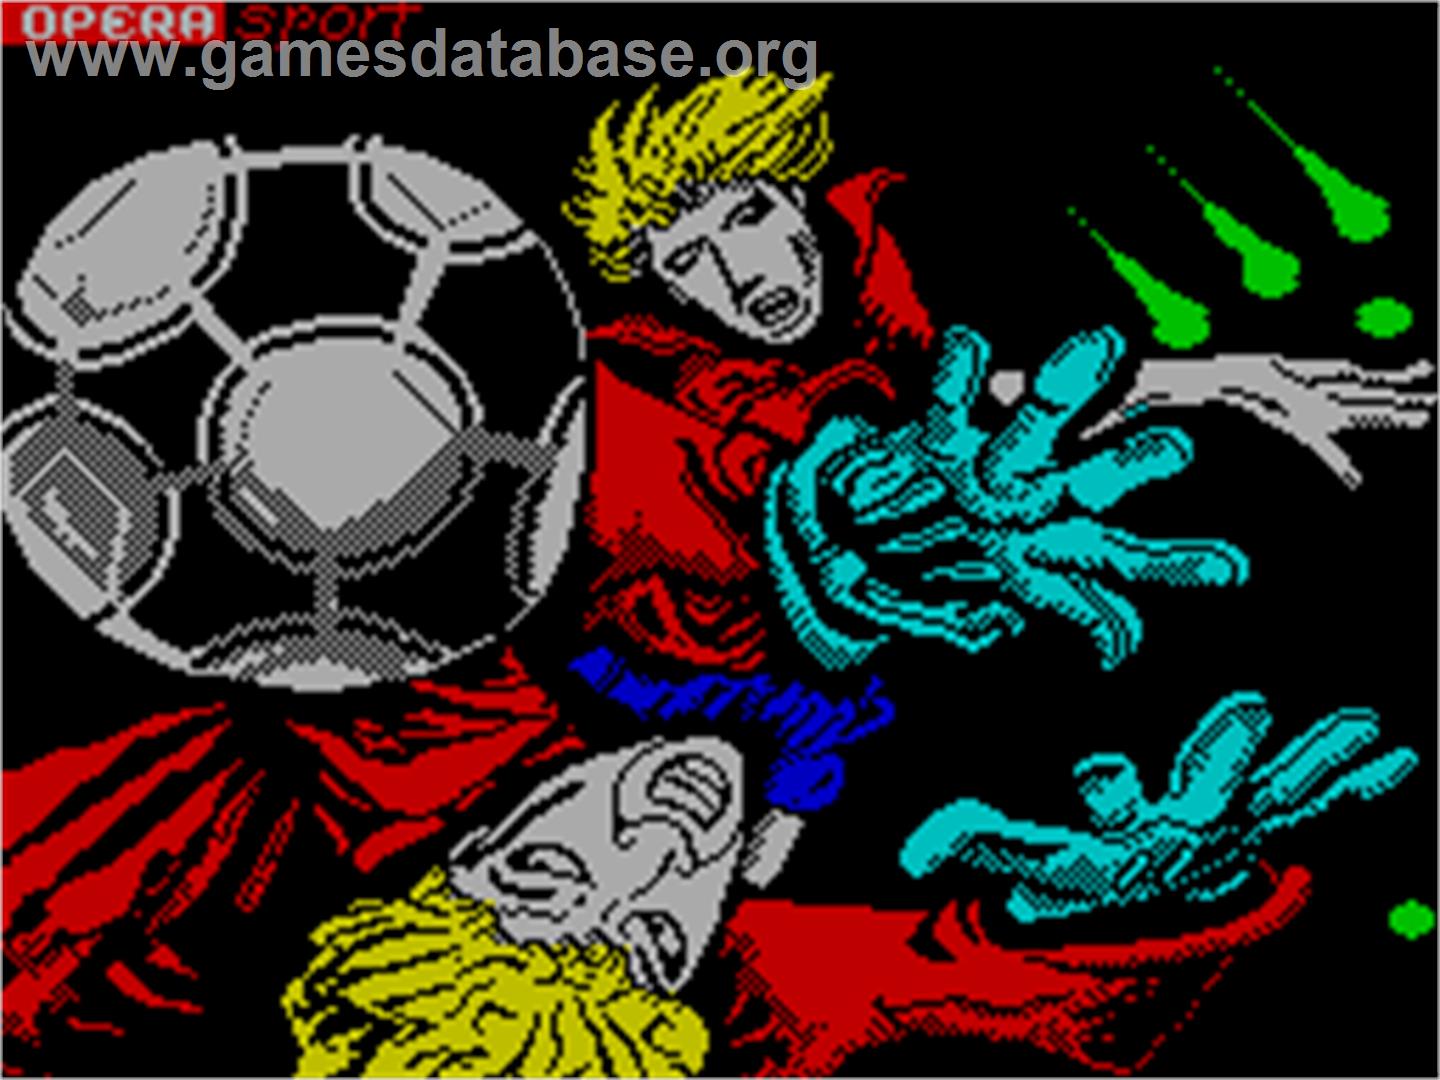 Mundial de Fútbol - Sinclair ZX Spectrum - Artwork - Title Screen